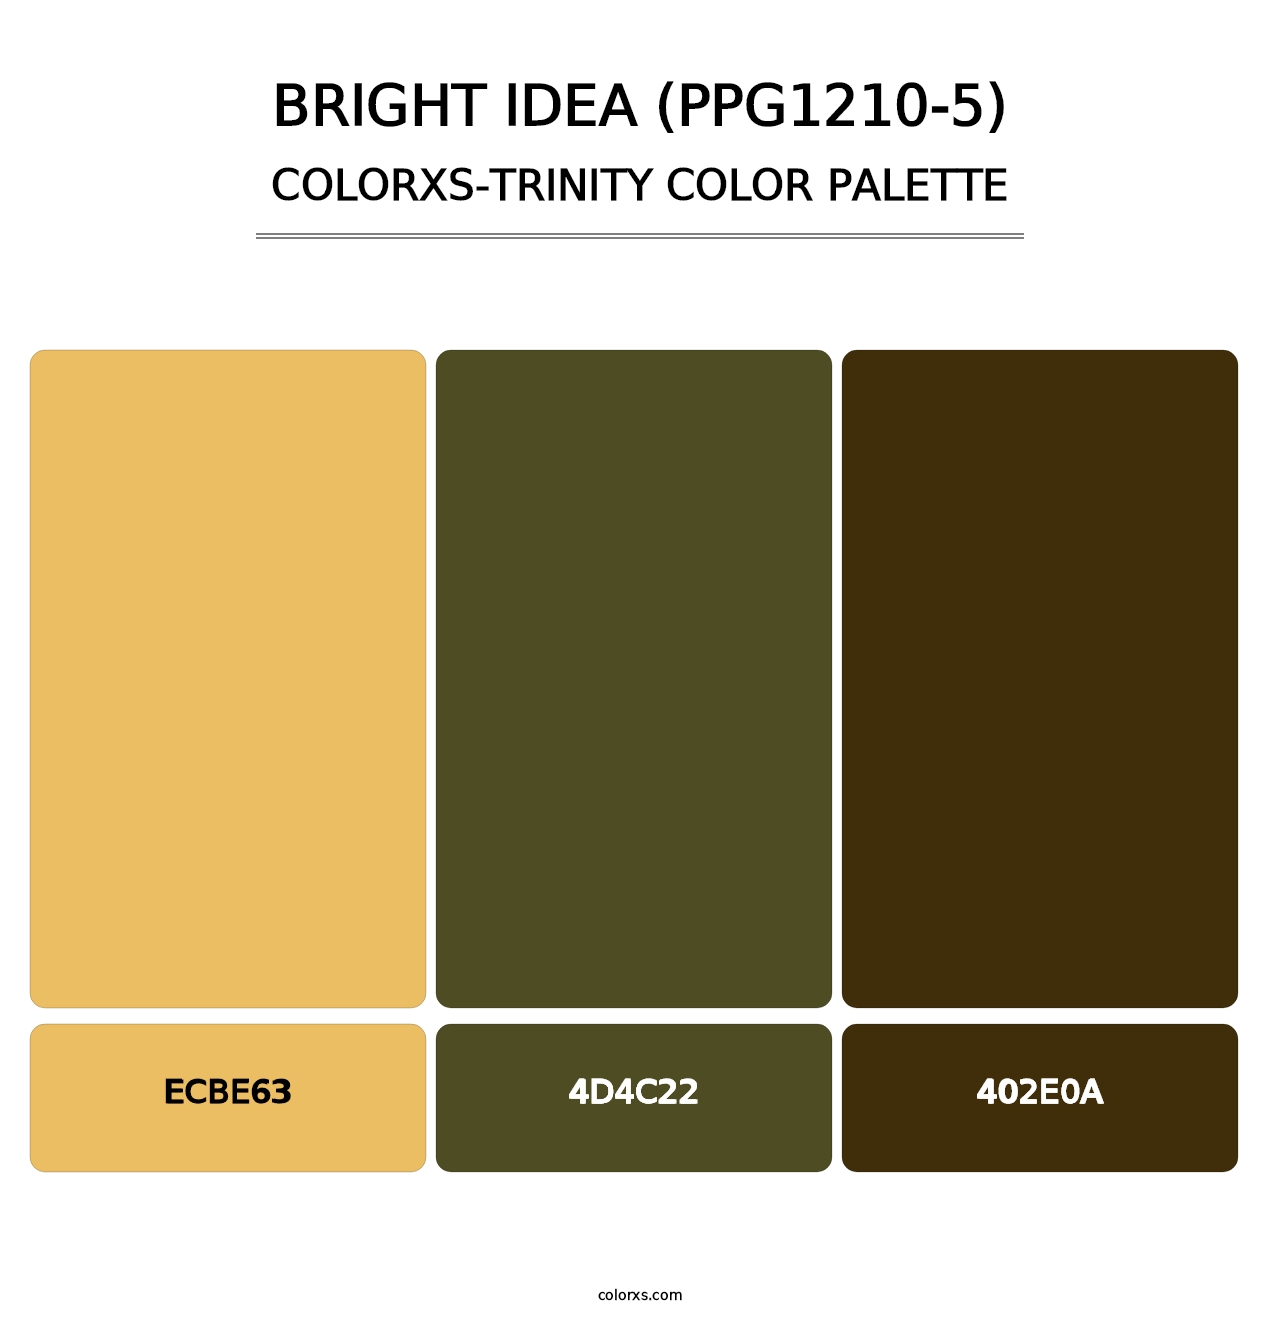 Bright Idea (PPG1210-5) - Colorxs Trinity Palette